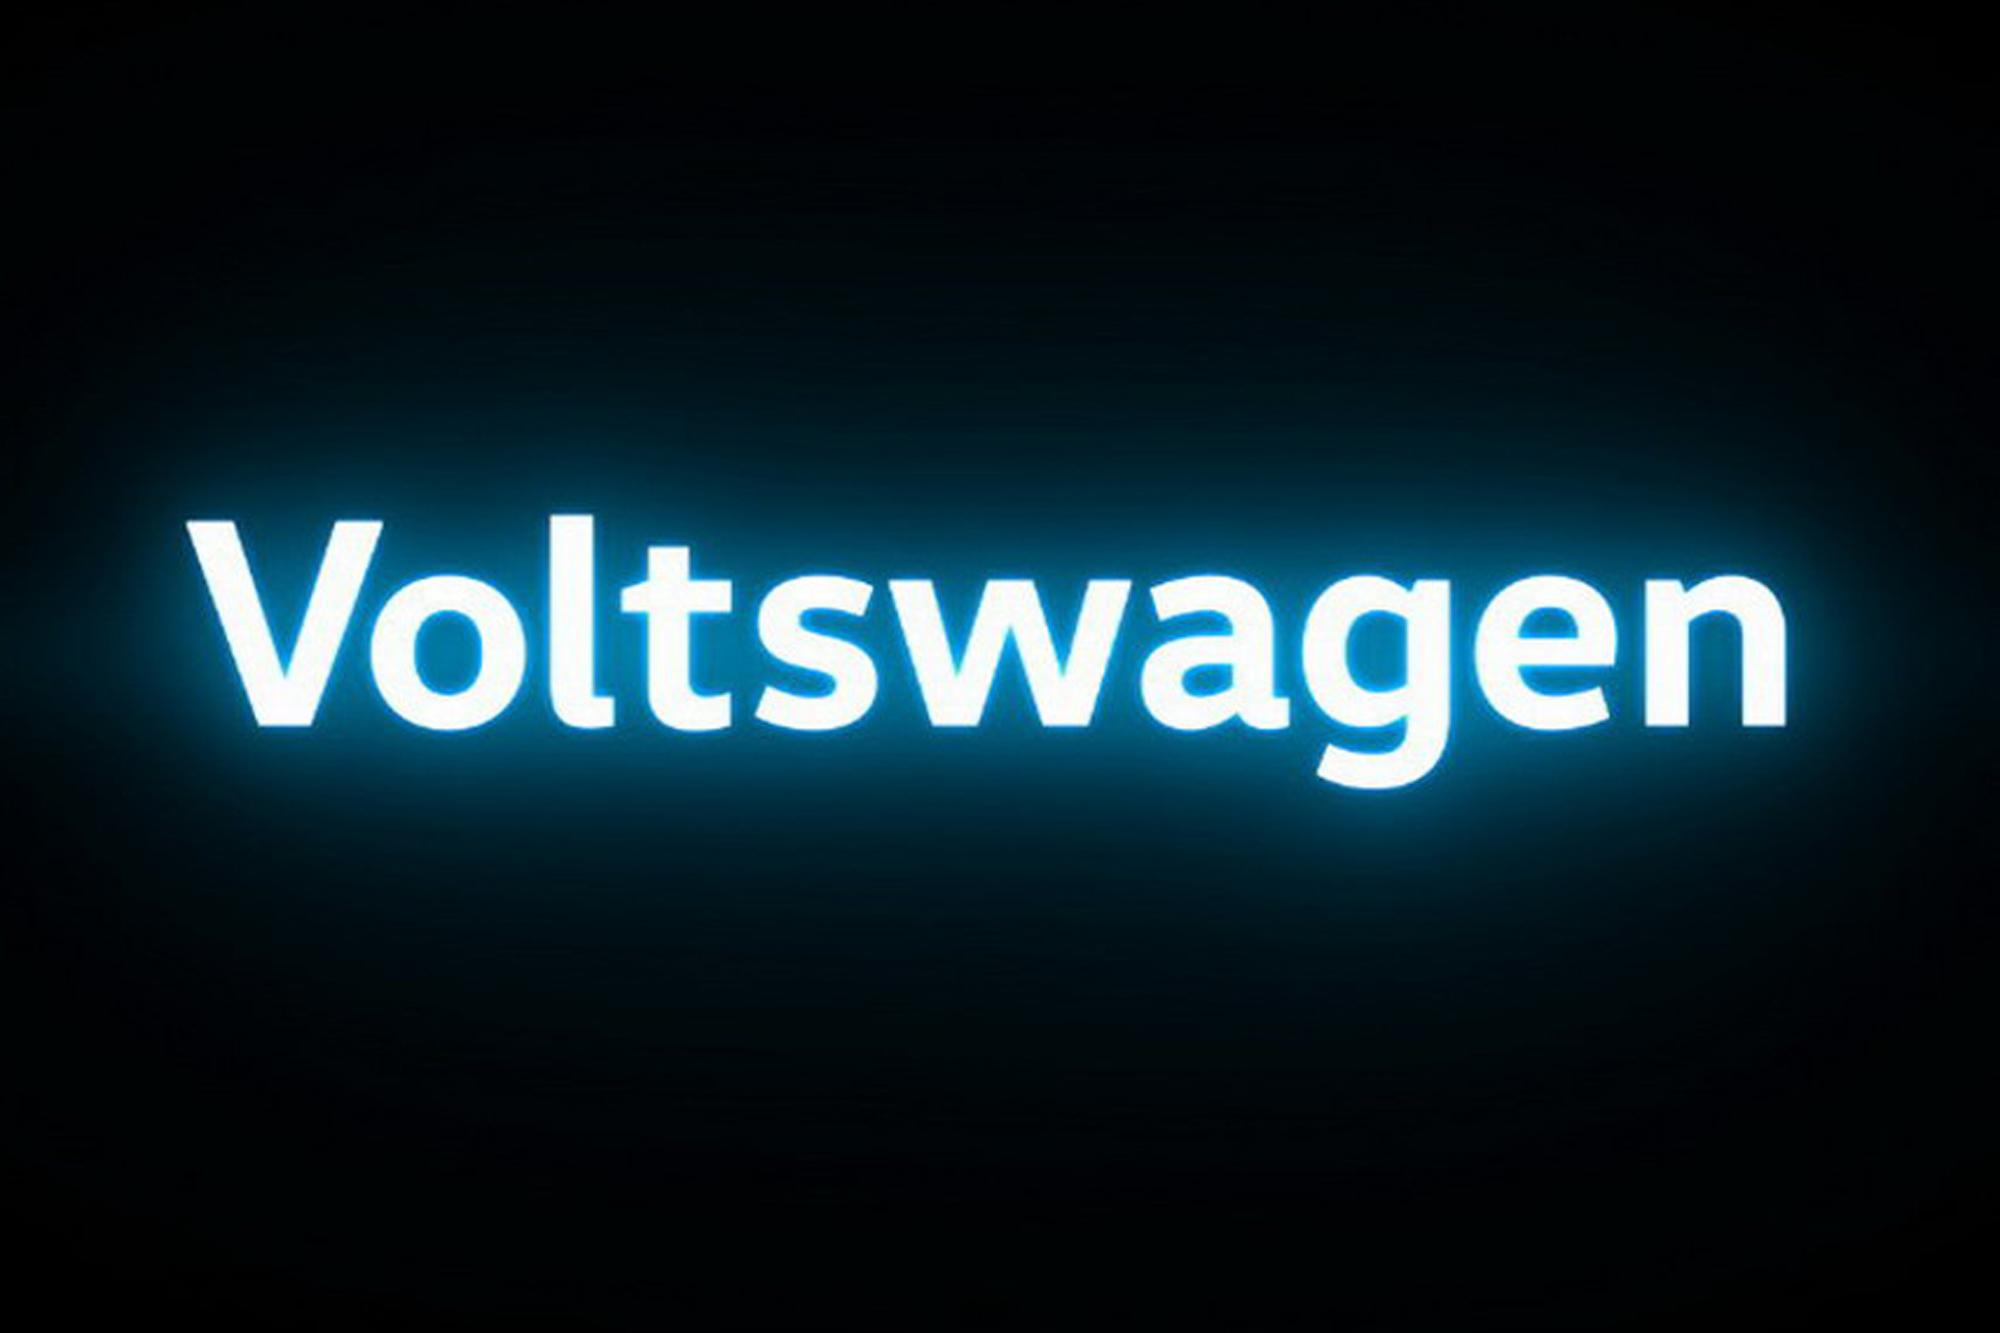 Επίσημο: Έρχεται η Voltswagen!